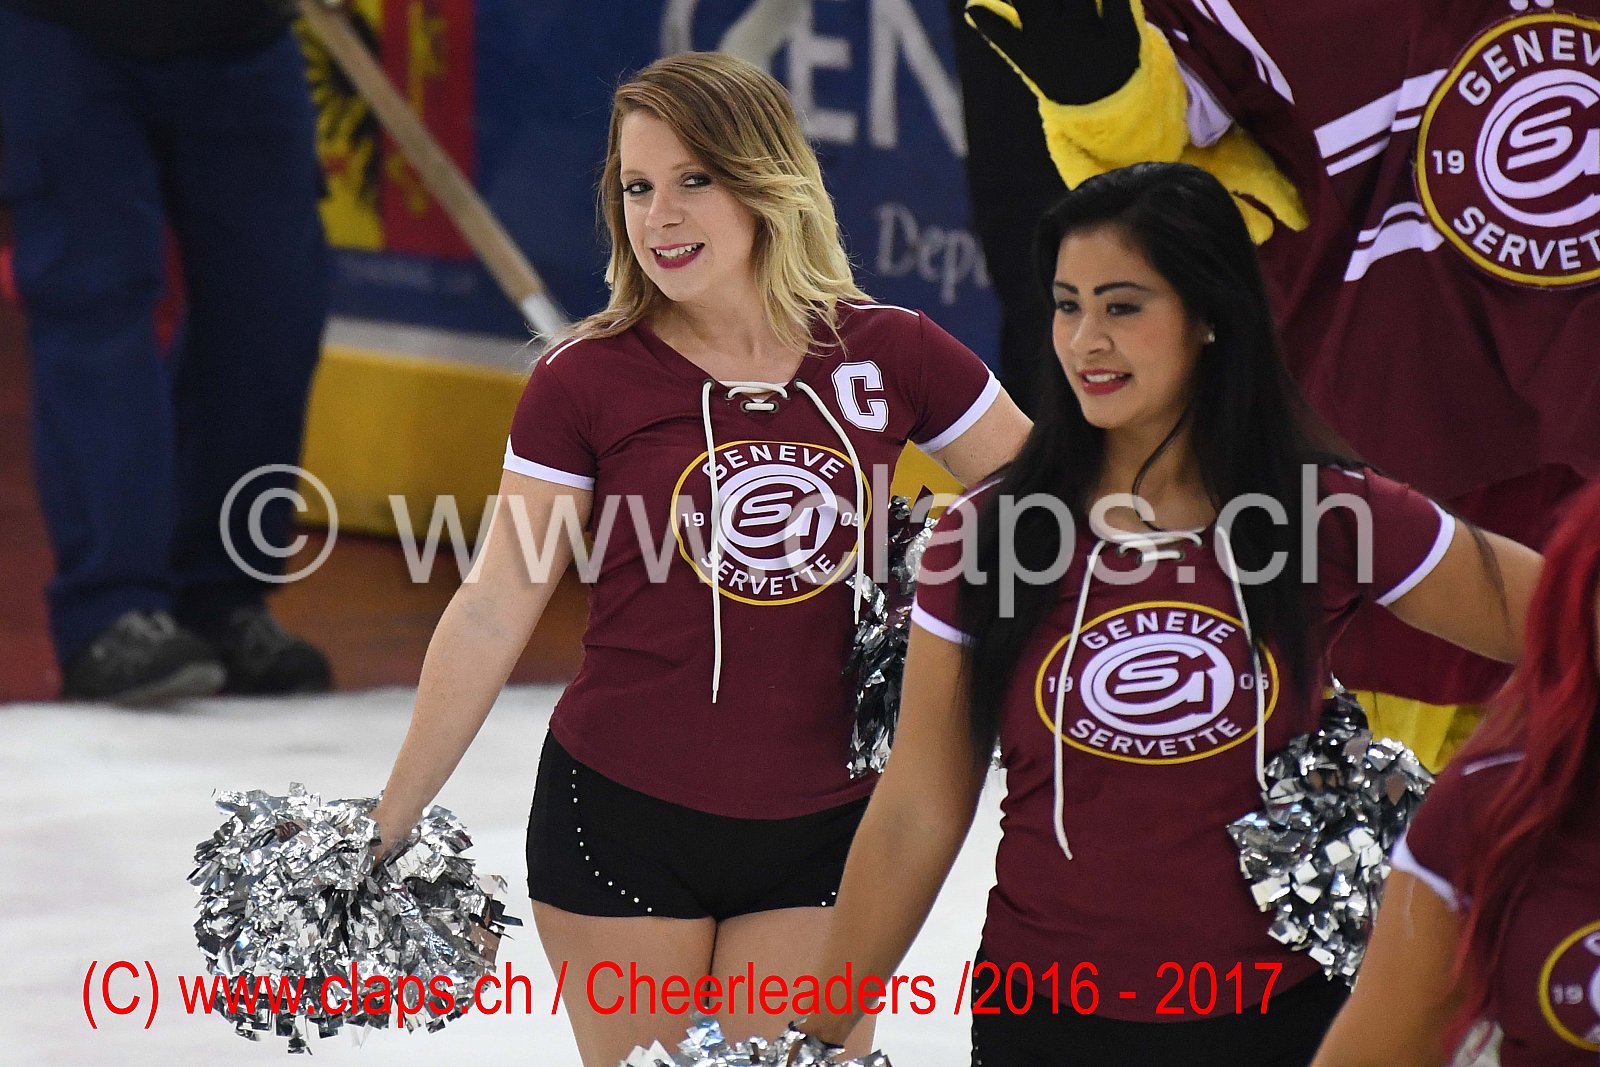 GSHC - LUGANO - Cheerleaders 2016-2017